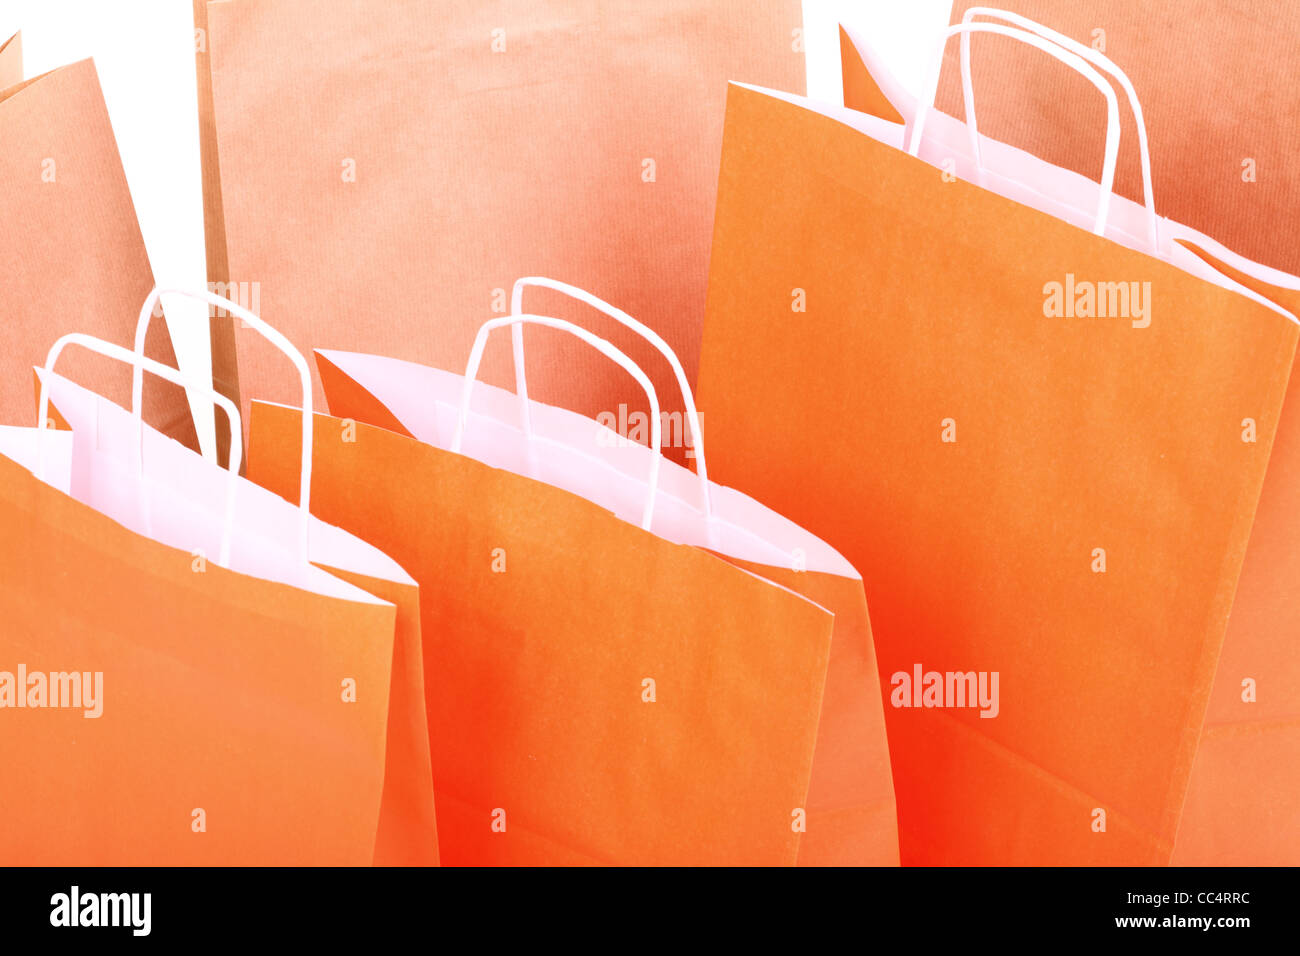 Orange Shopping cadeaux sacs personne fond couleur Banque D'Images